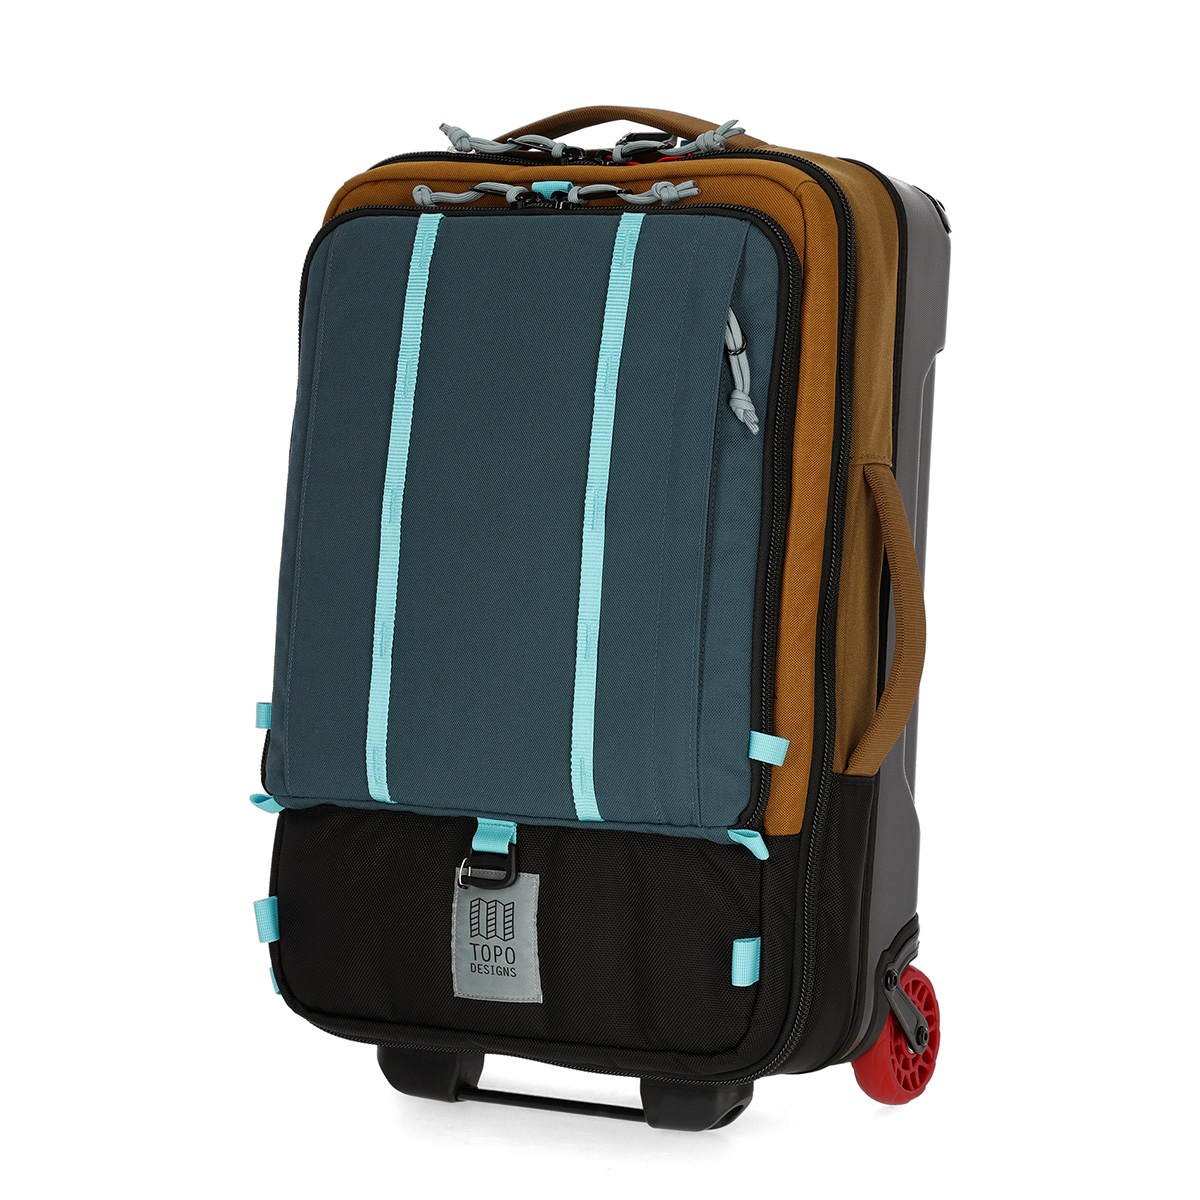 Global Travel Bag Roller